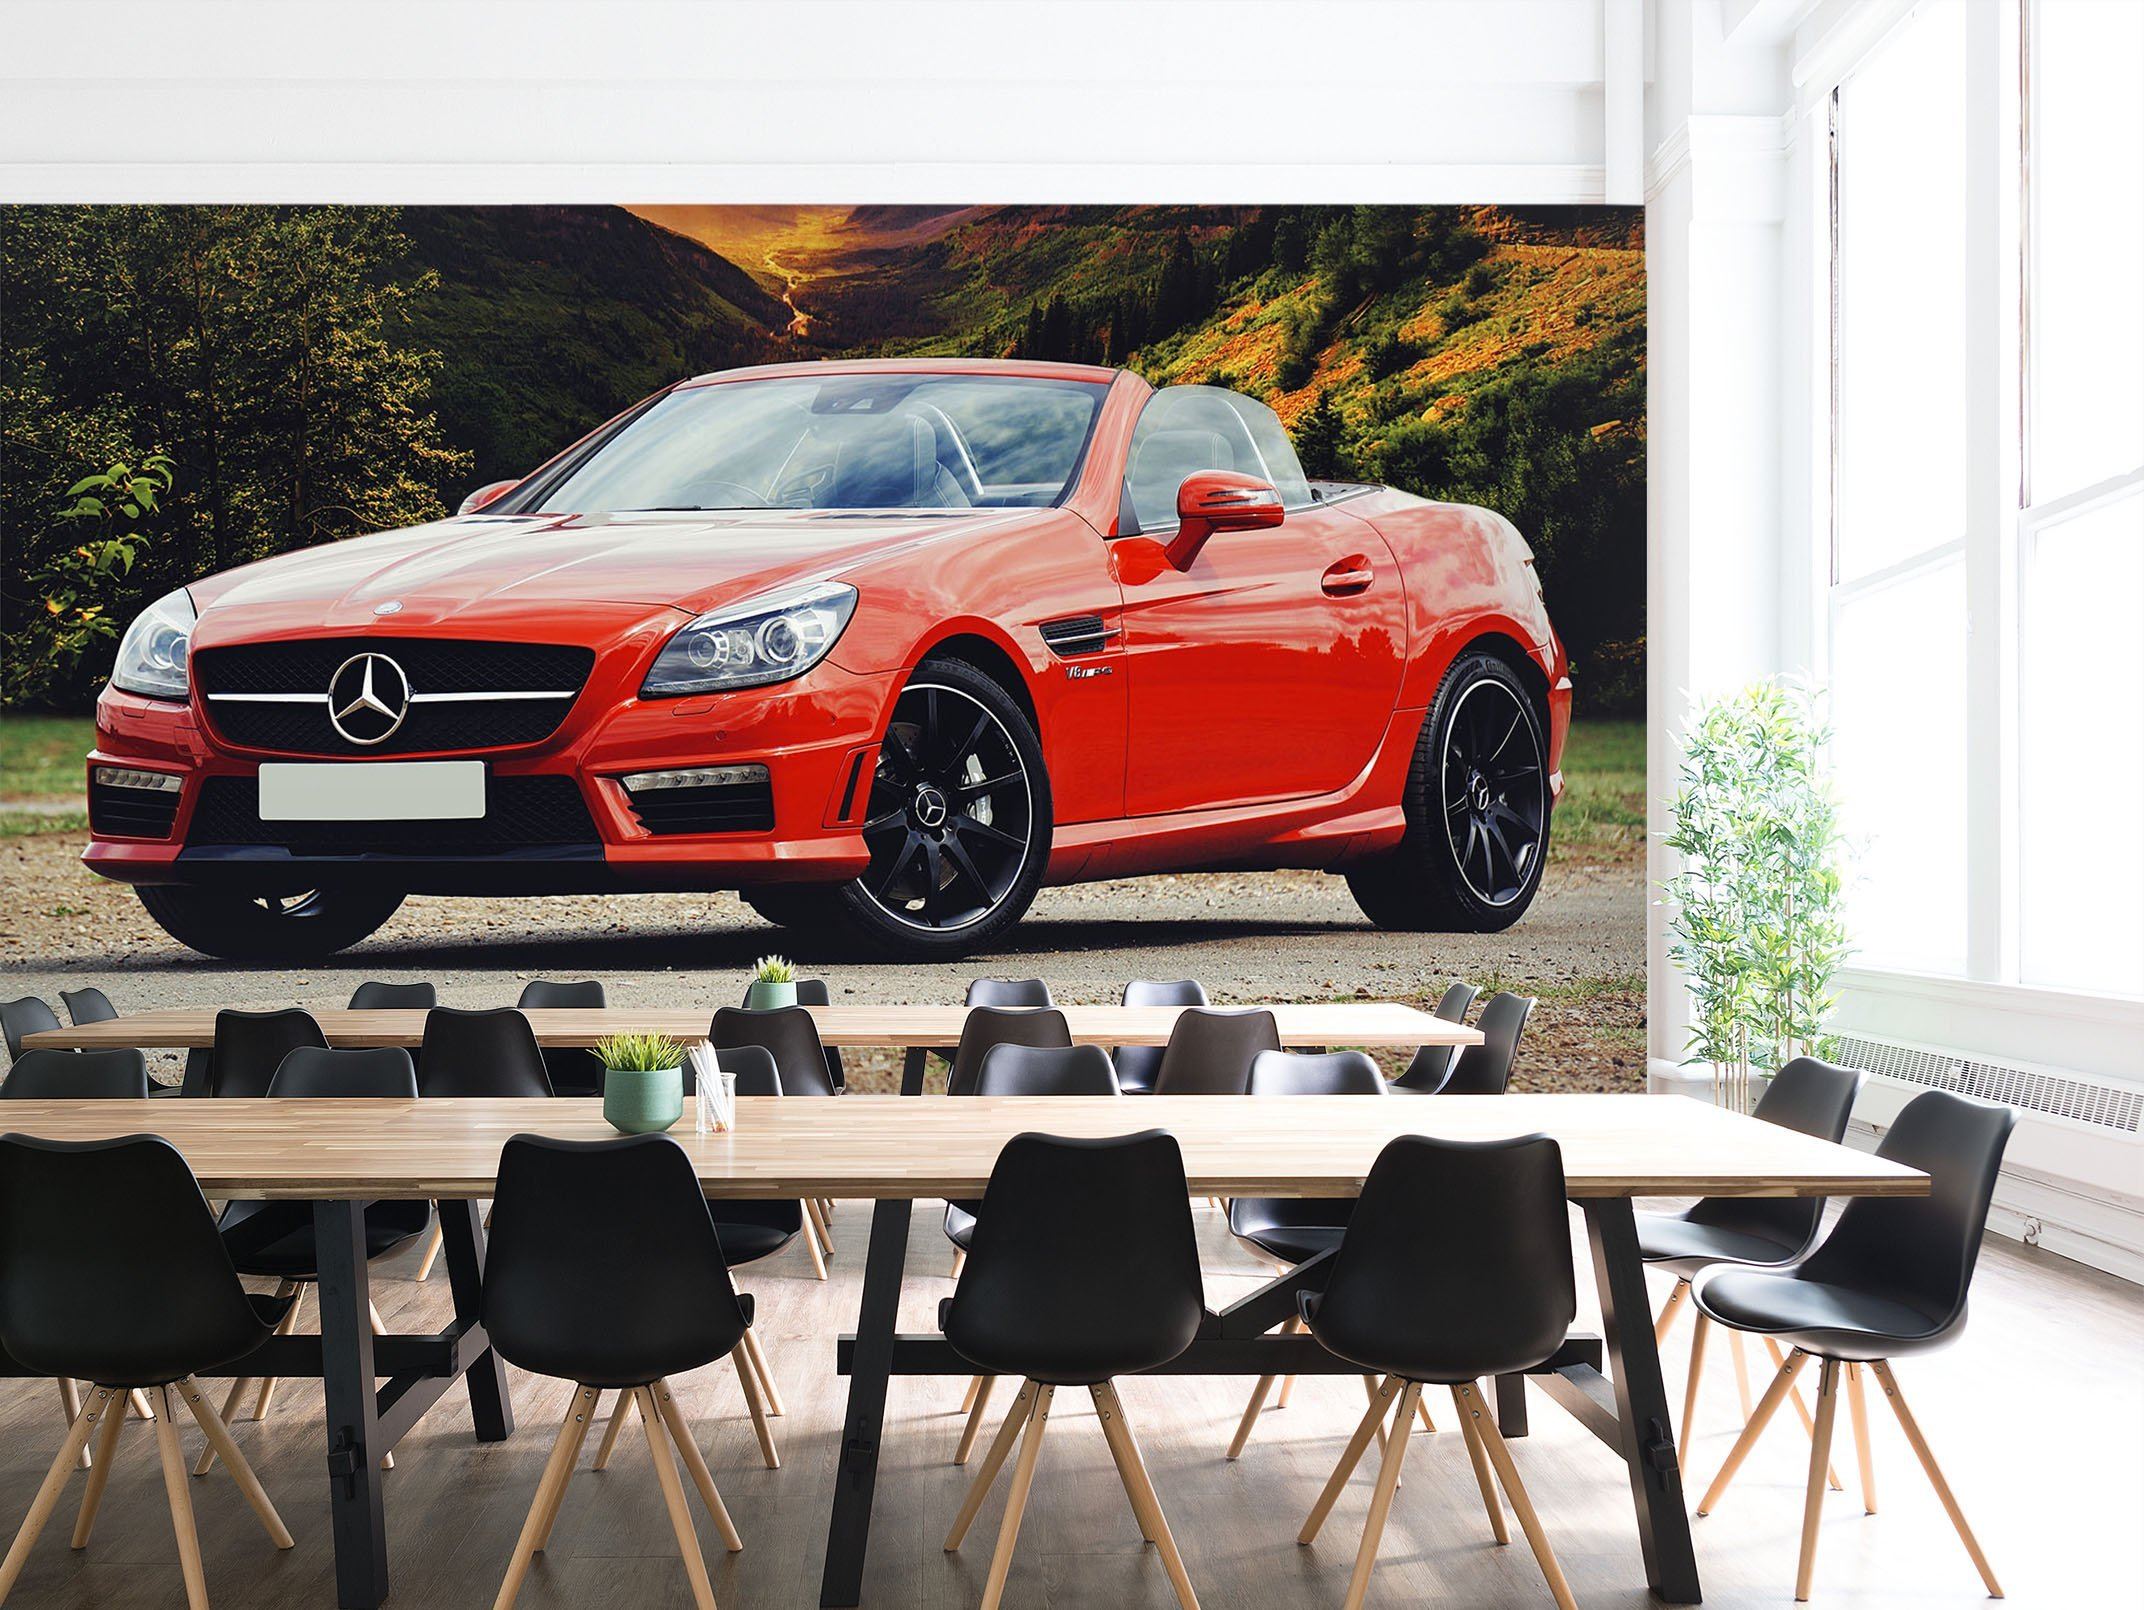 3D Mercedes Benz 998 Vehicle Wall Murals Wallpaper AJ Wallpaper 2 